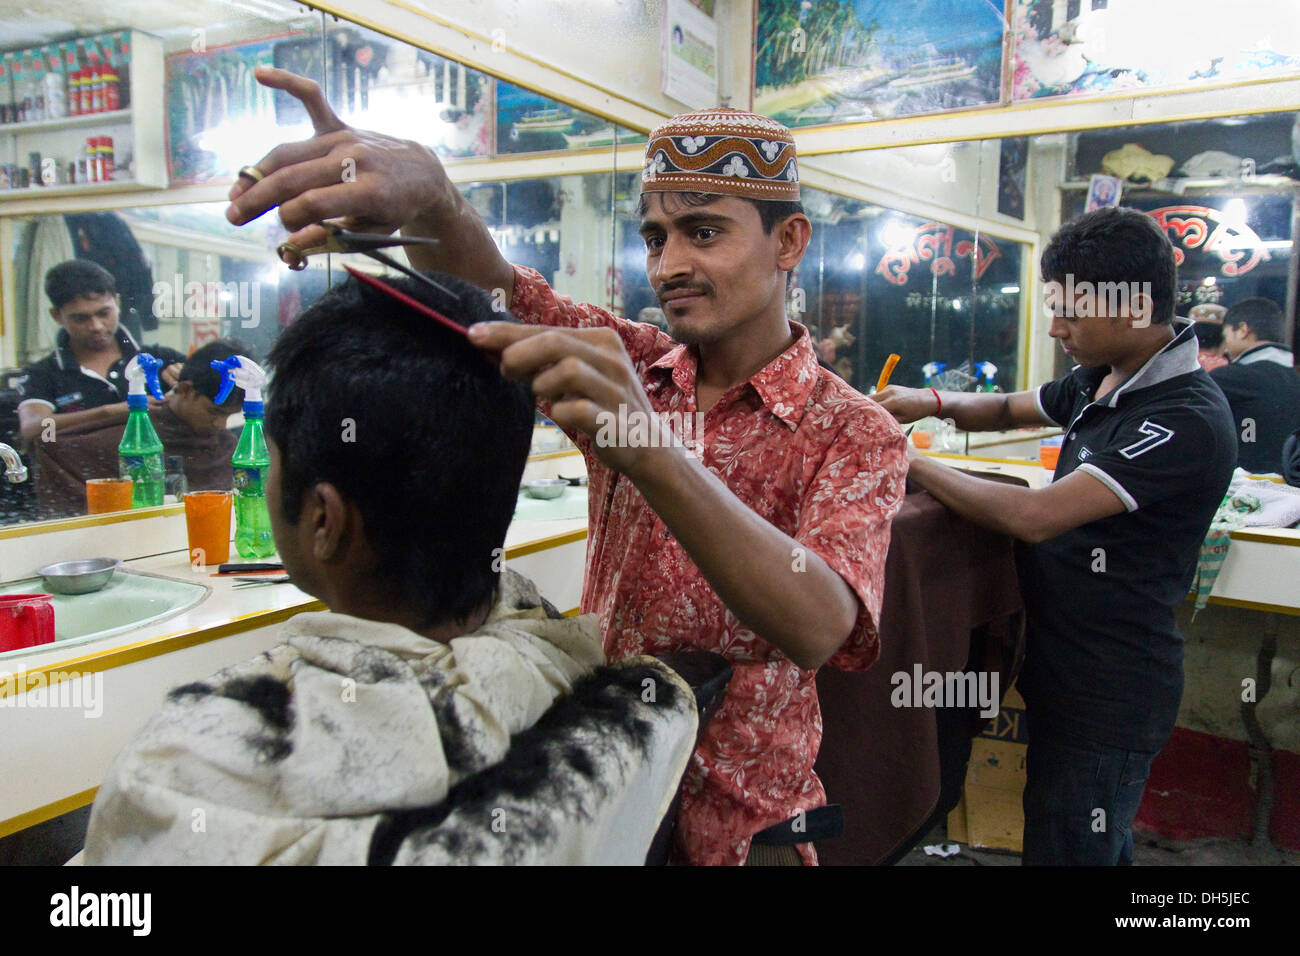 Deux salons de coiffure couper leurs cheveux du client, nouveau marché, Dhaka, Bangladesh, l'Asie du Sud, Asie Banque D'Images